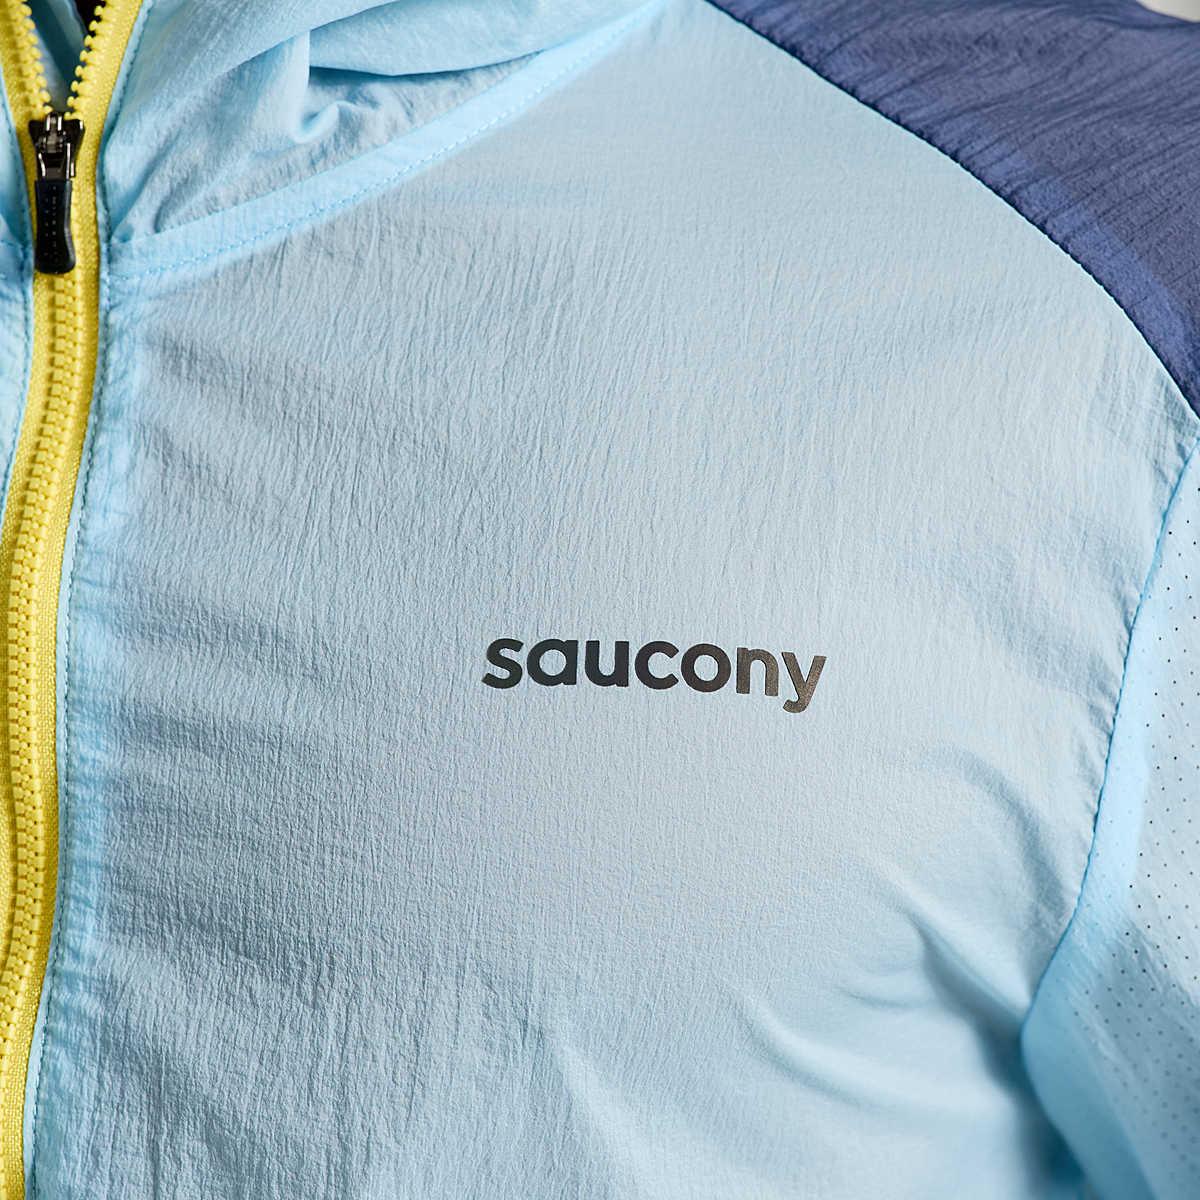 Saucony - Men's Elevate Packaway Jacket - The Shoe Collective